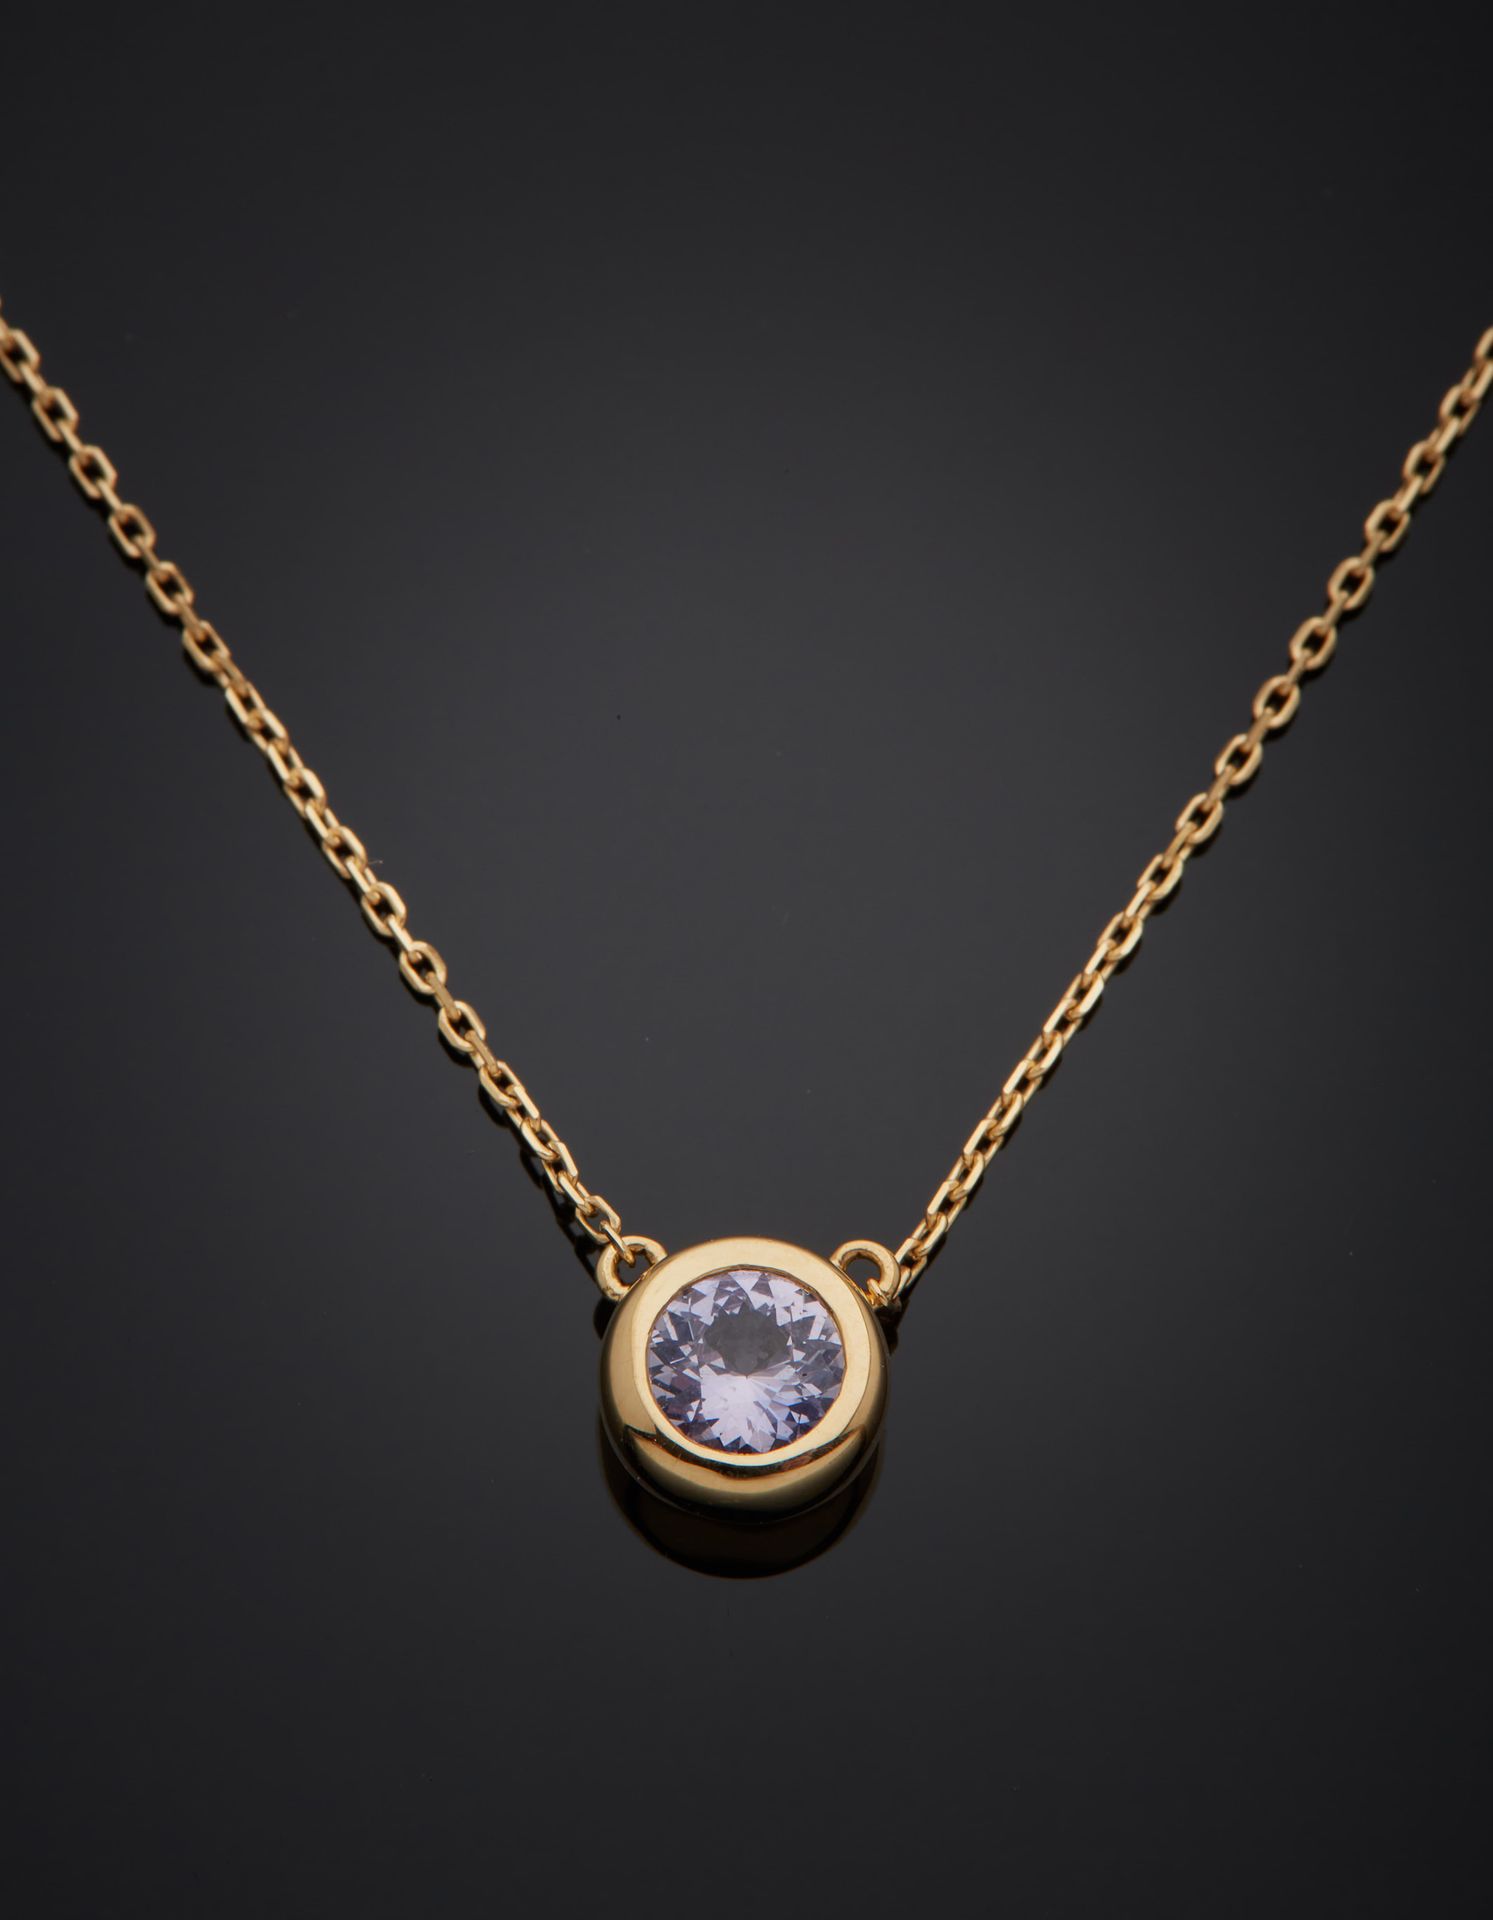 Null 一条18K黄金750‰的项链，装饰有一颗封闭式镶嵌的圆形紫色蓝宝石，其上有锉刀状的美食链，弹簧环扣。附有宝石研究中心的证书。
长45.50厘米 毛重2&hellip;